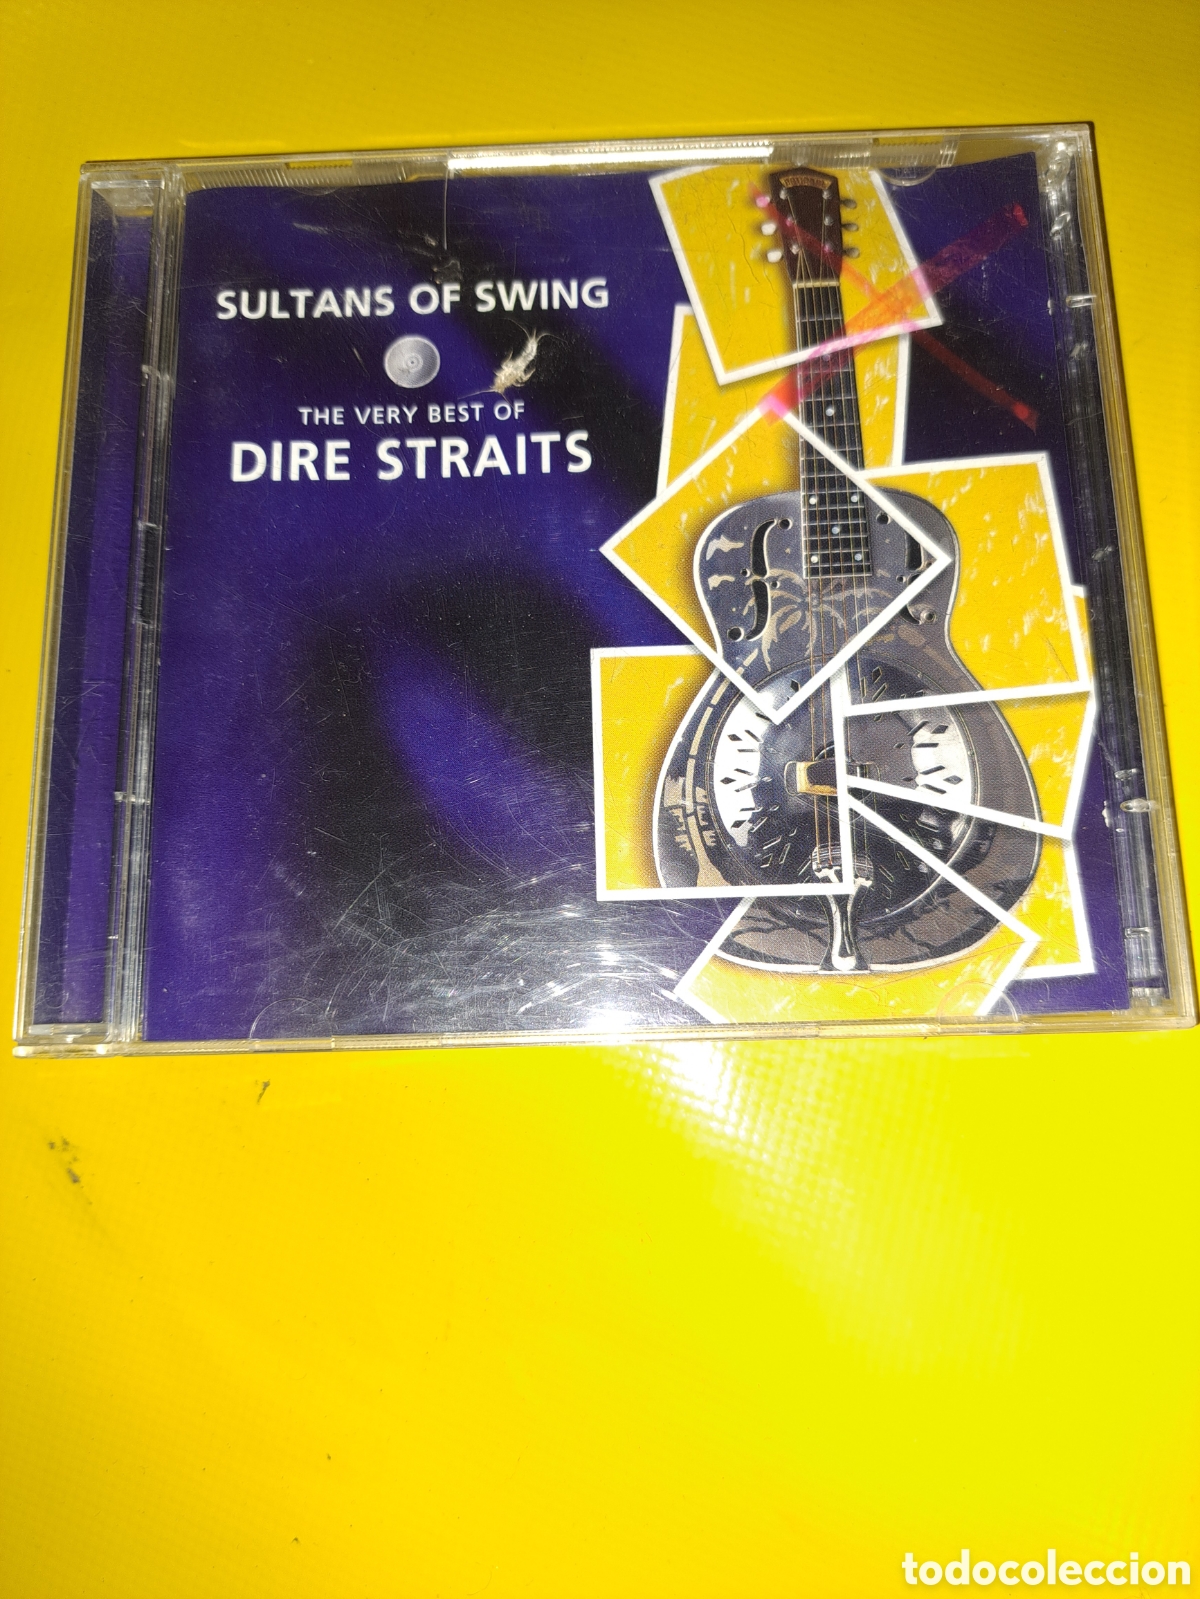 cd the very best of dire straits sultans of swi - Acquista CD di altri  stili musicali su todocoleccion